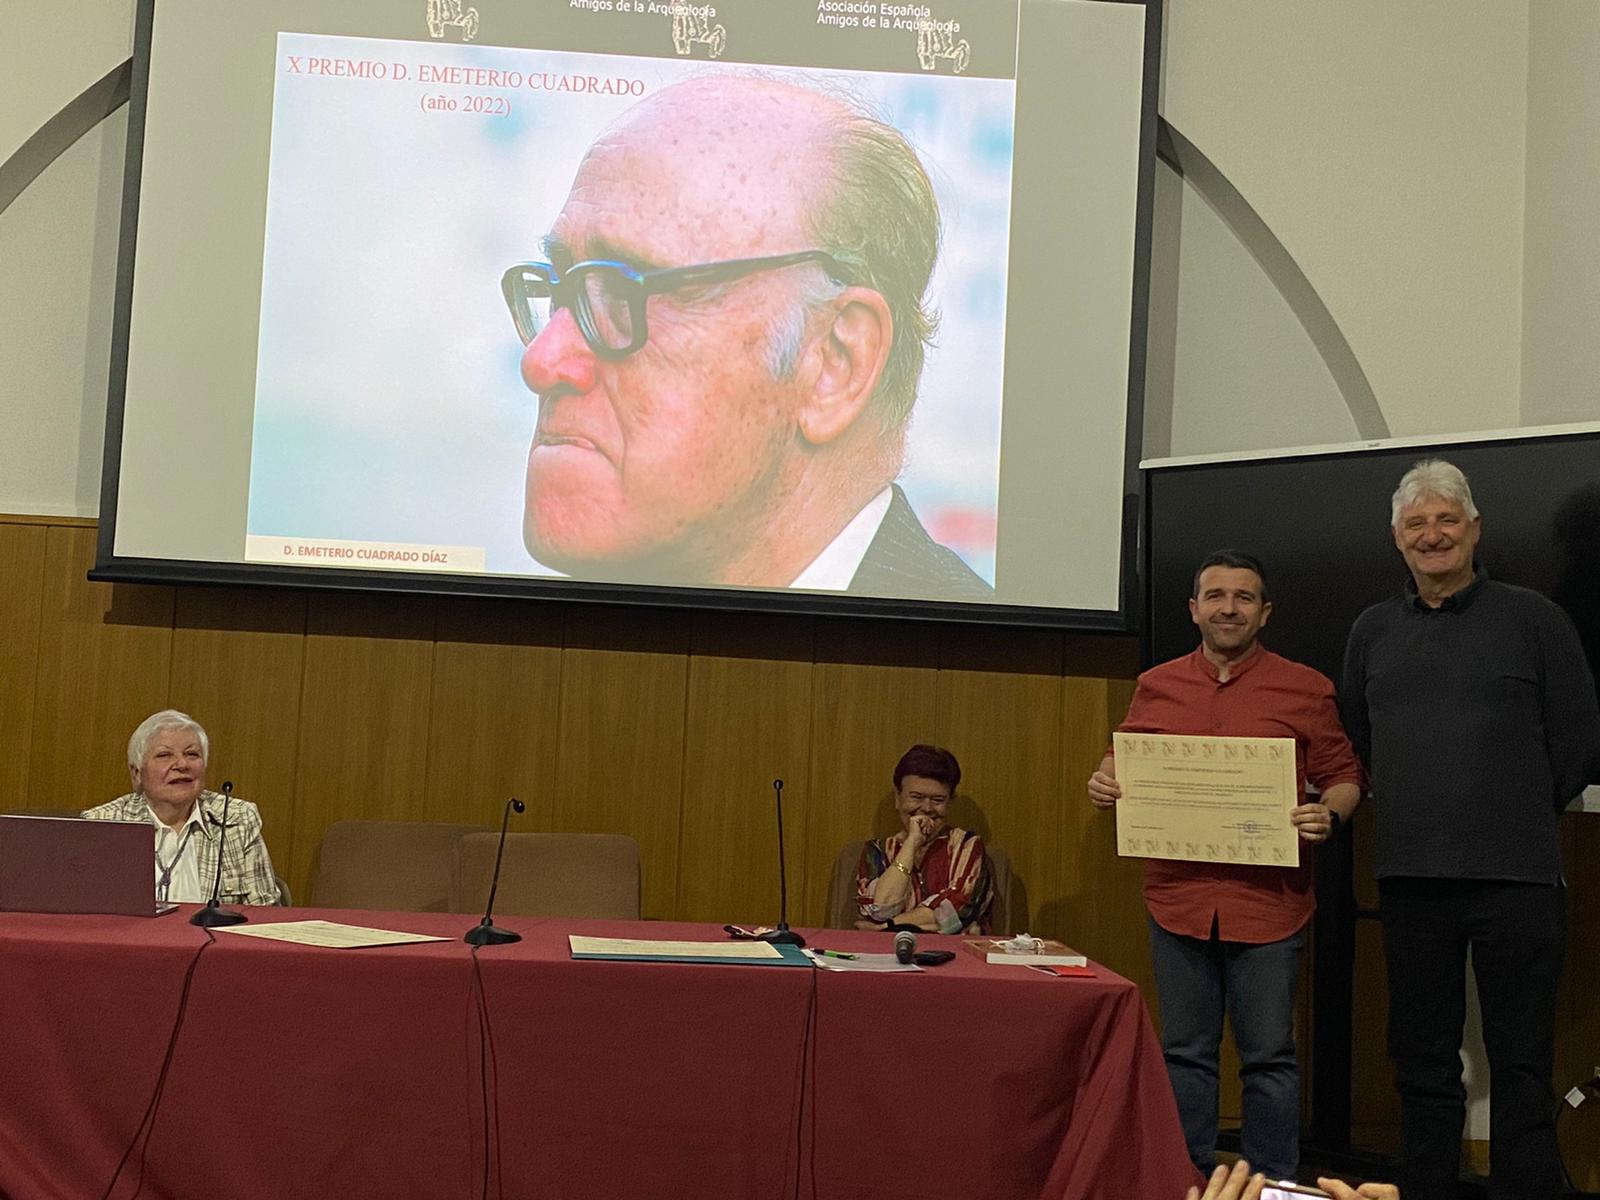 Diego Díaz González finalista en el pretigioso premio Emeterio Cuadrado de Arqueología